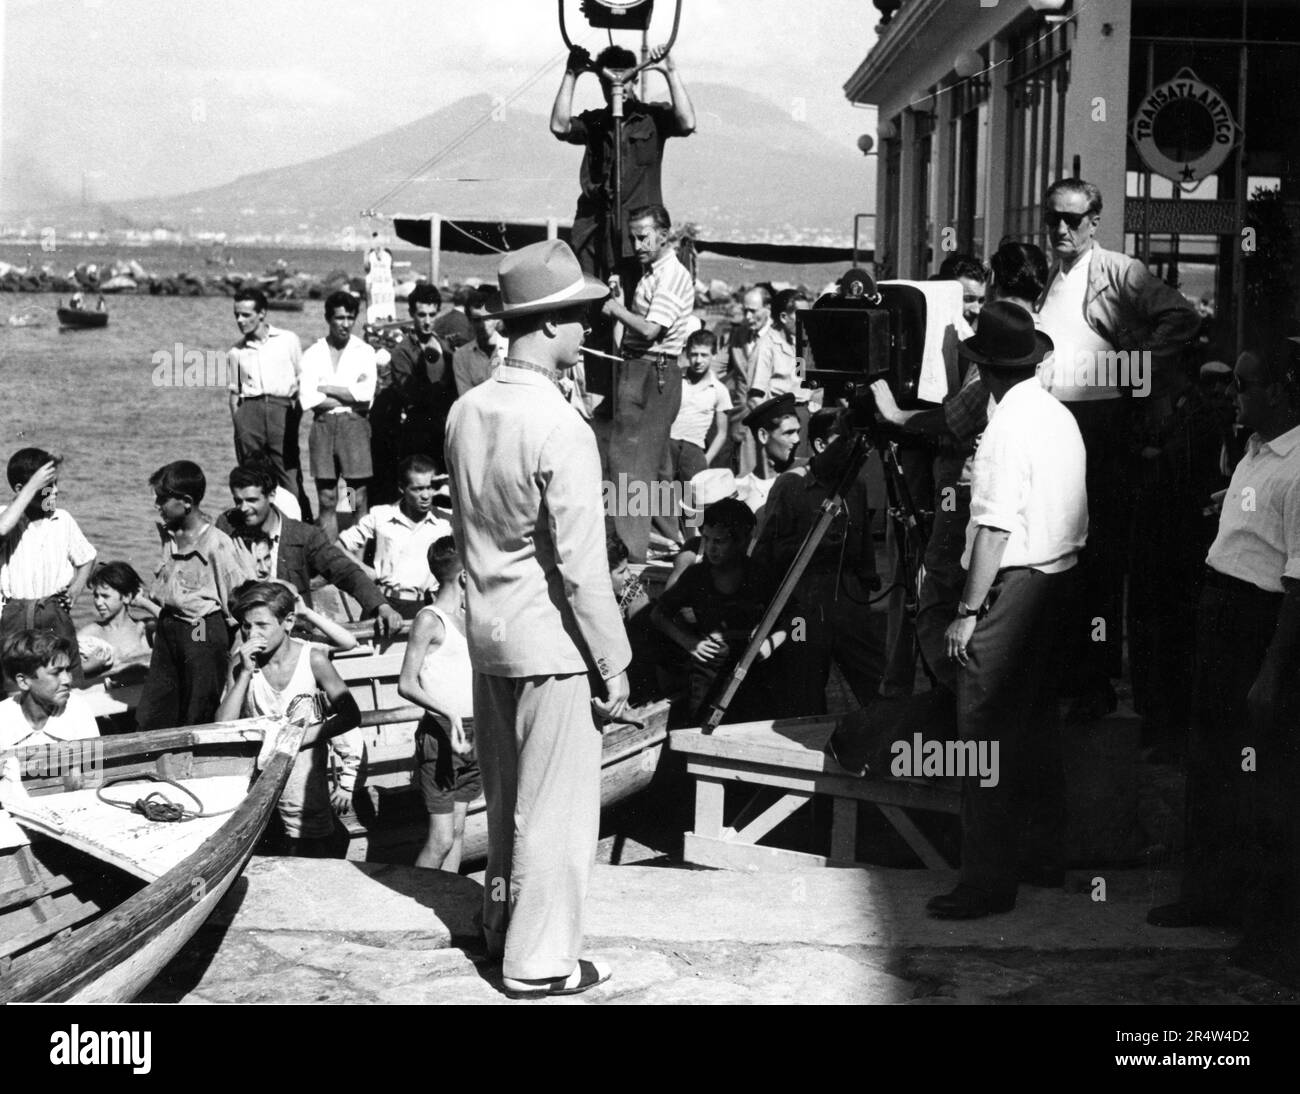 Vor Ort beim Filmen des unbekannten ITALIENISCHEN FILMS von OSVALDO CIVIRANI aus den späten 1940er/frühen 1950er Jahren Stockfoto